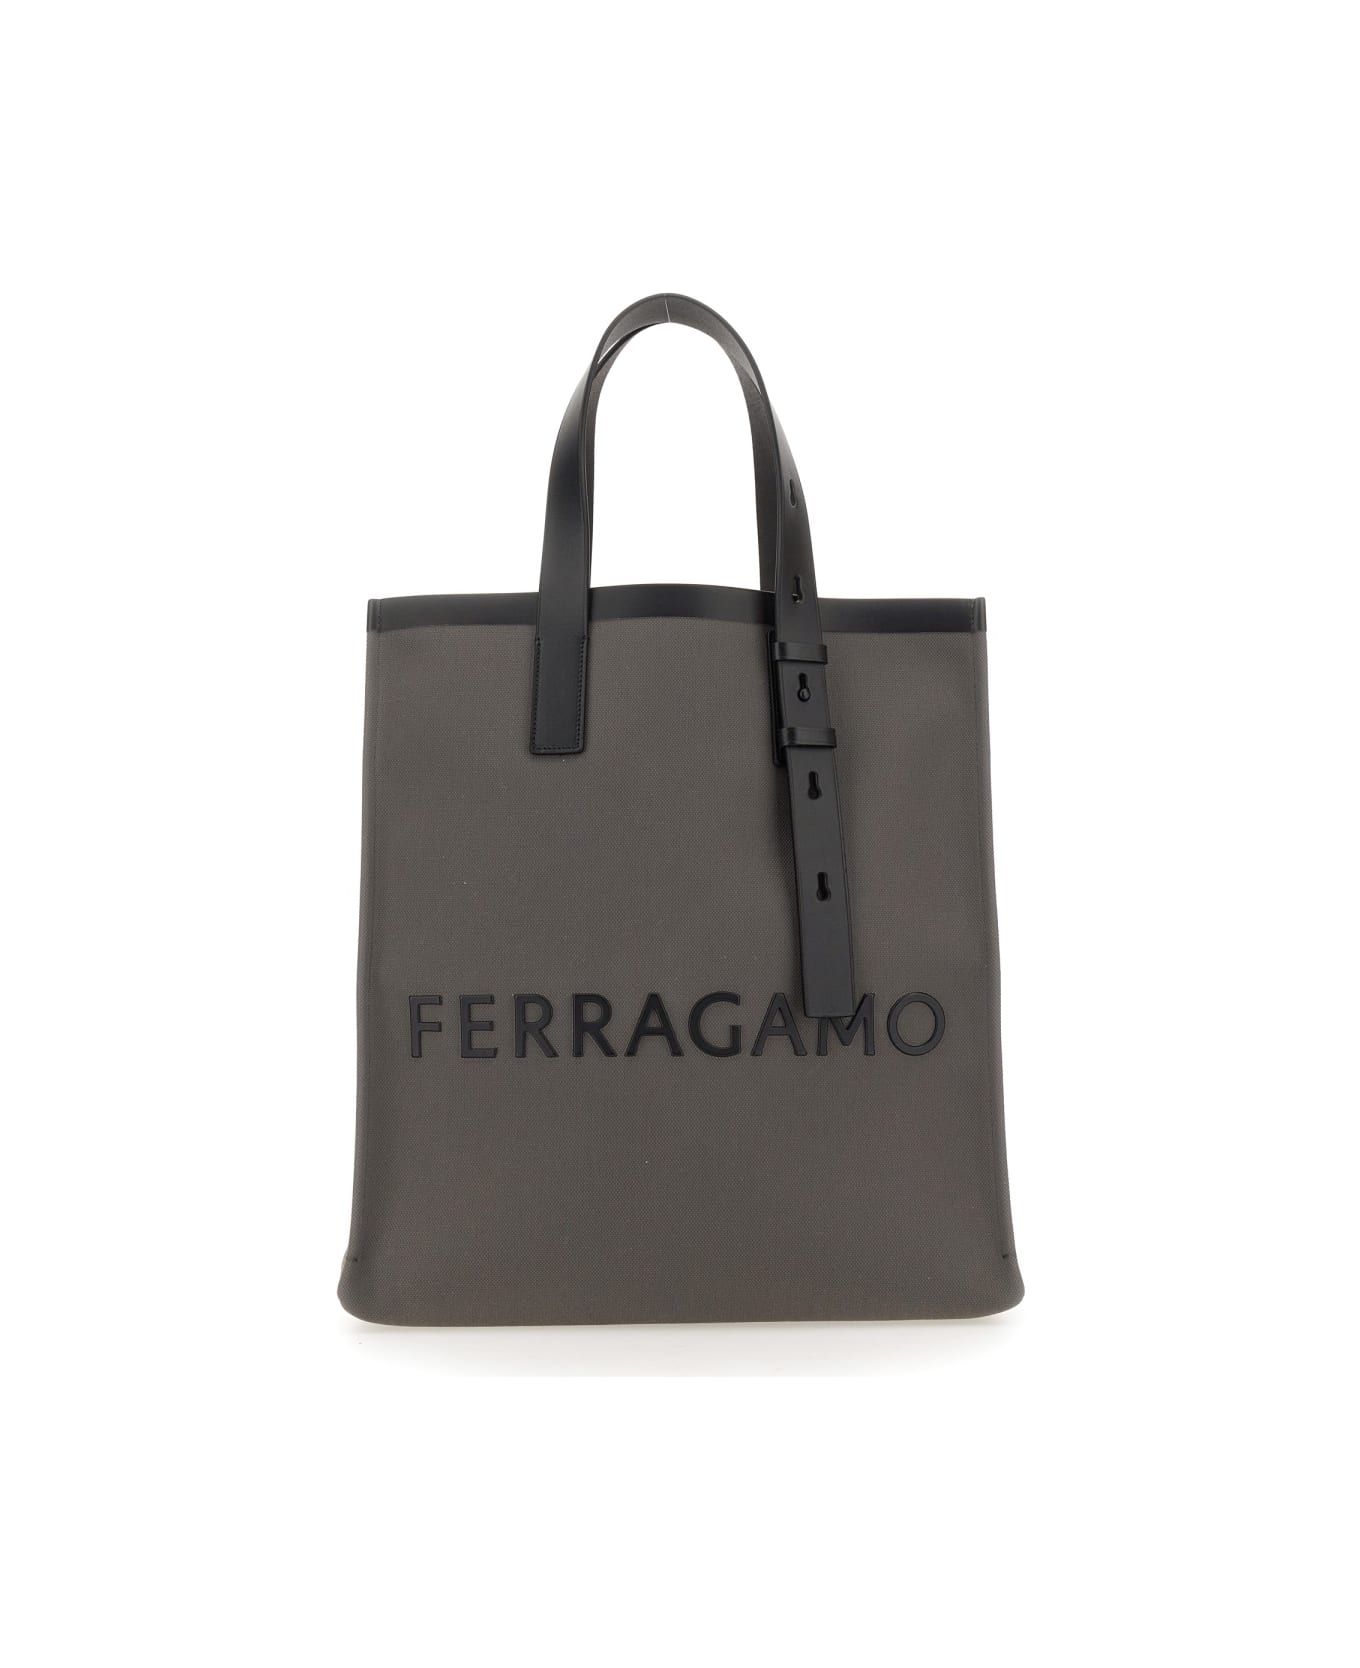 Ferragamo Tote Bag With Logo - GREY